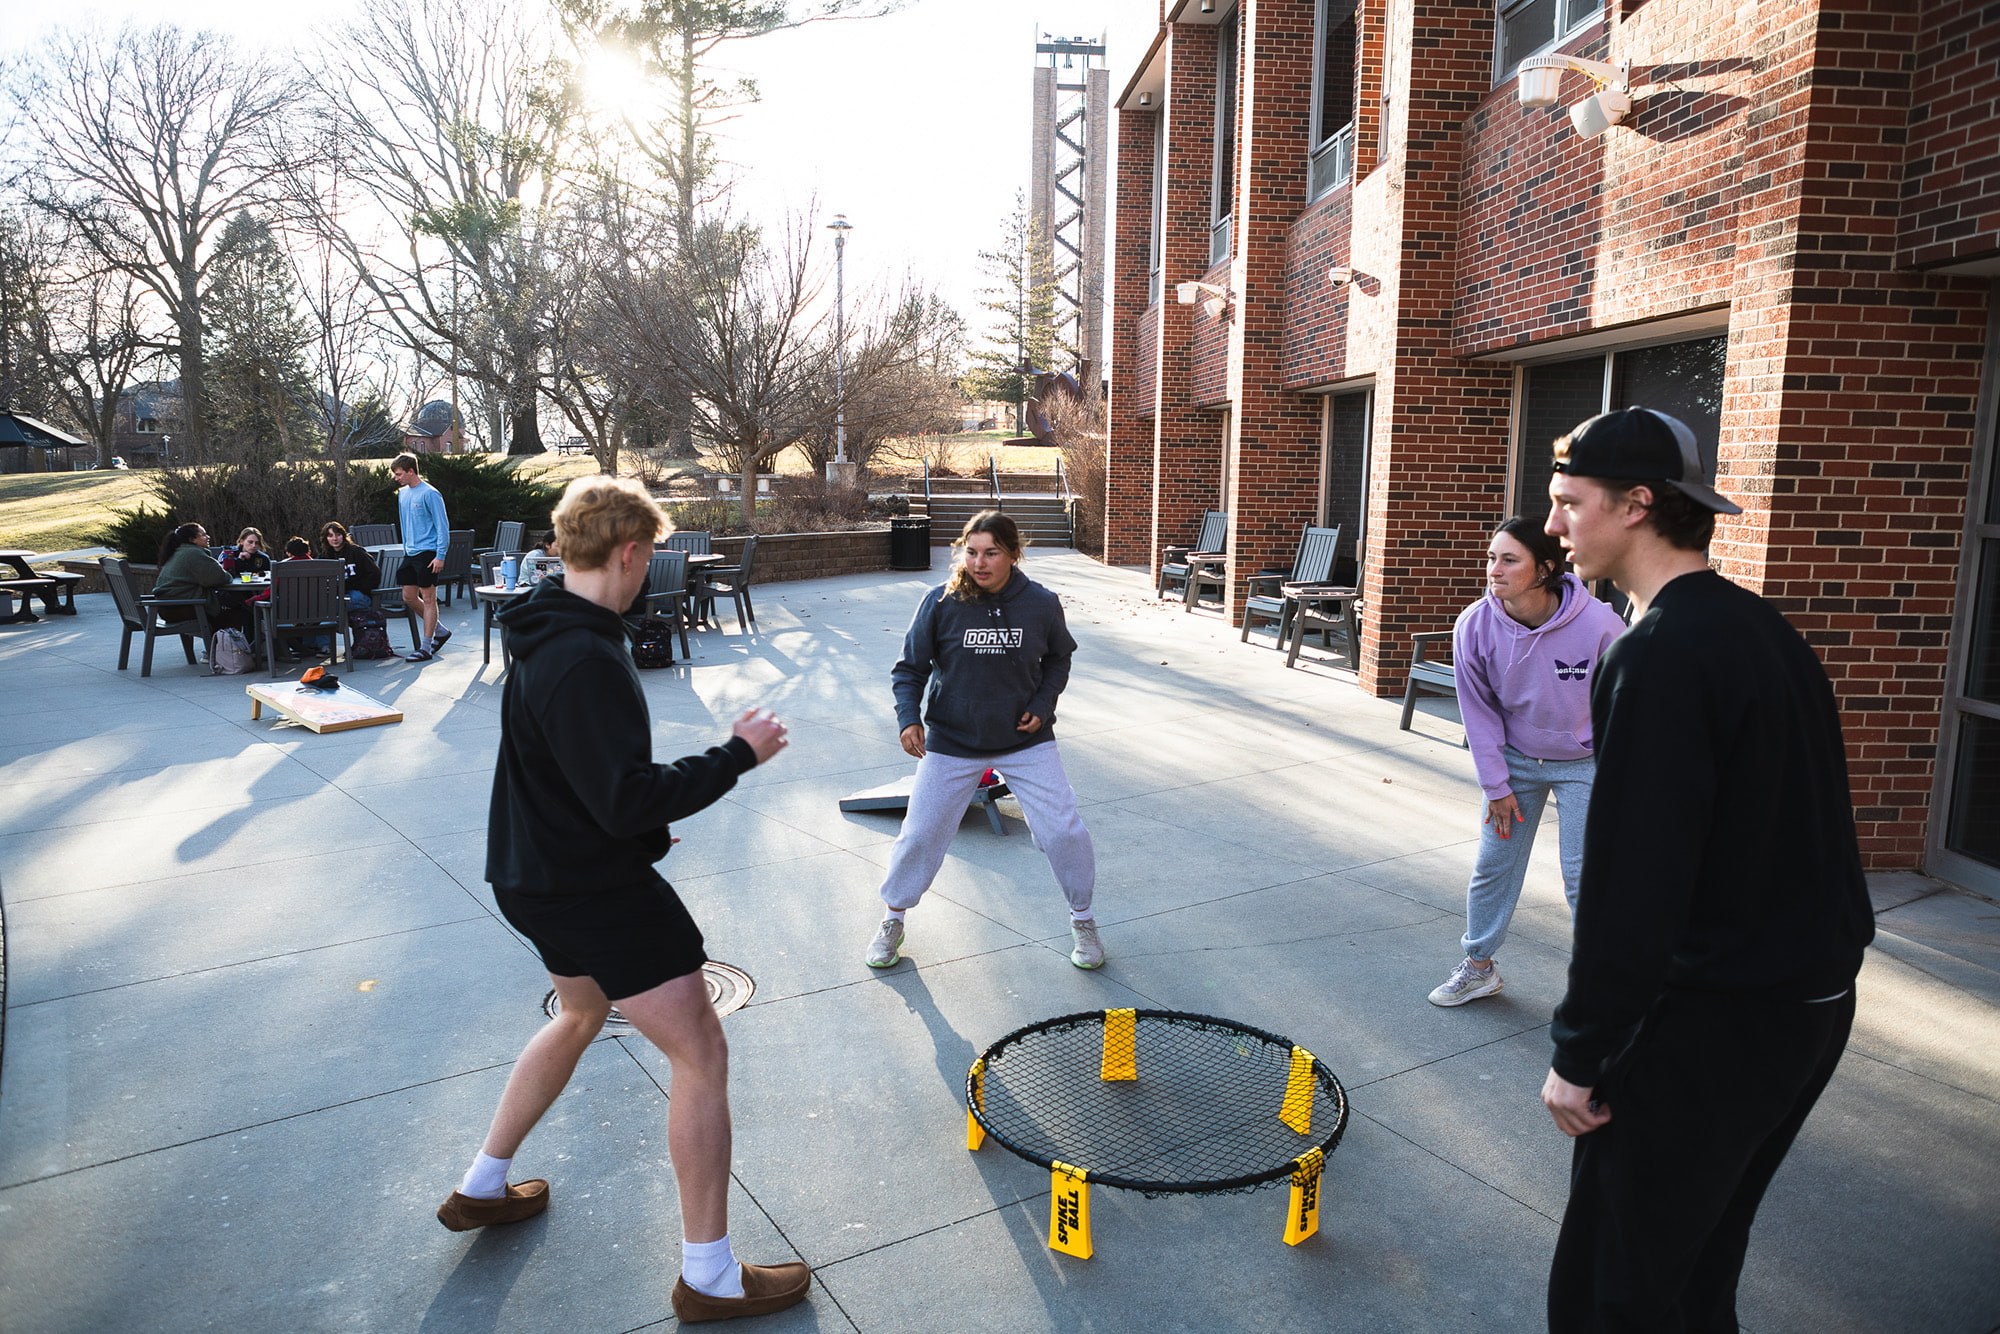 Doane students playing net ball.